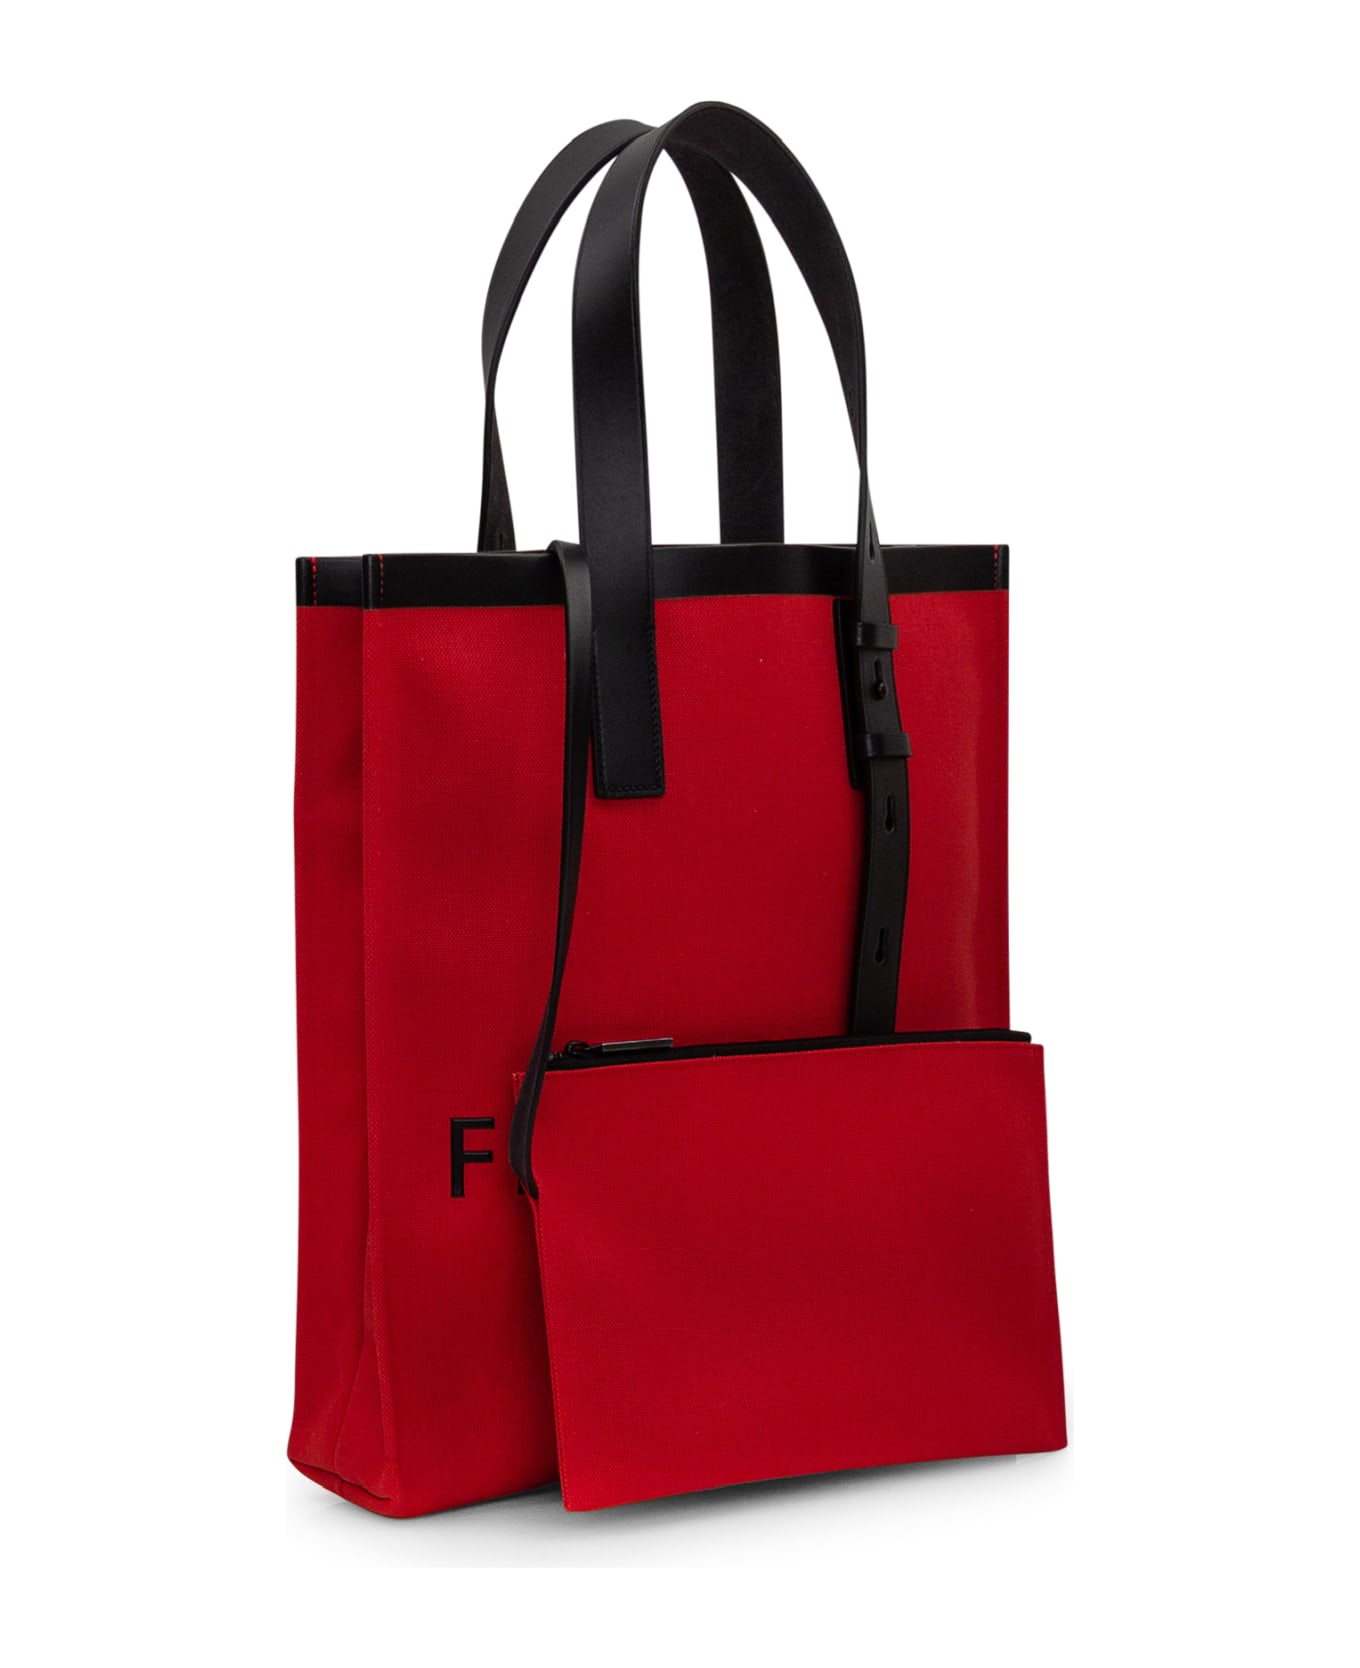 Ferragamo Tote Bag With Logo - FLAME RED NERO